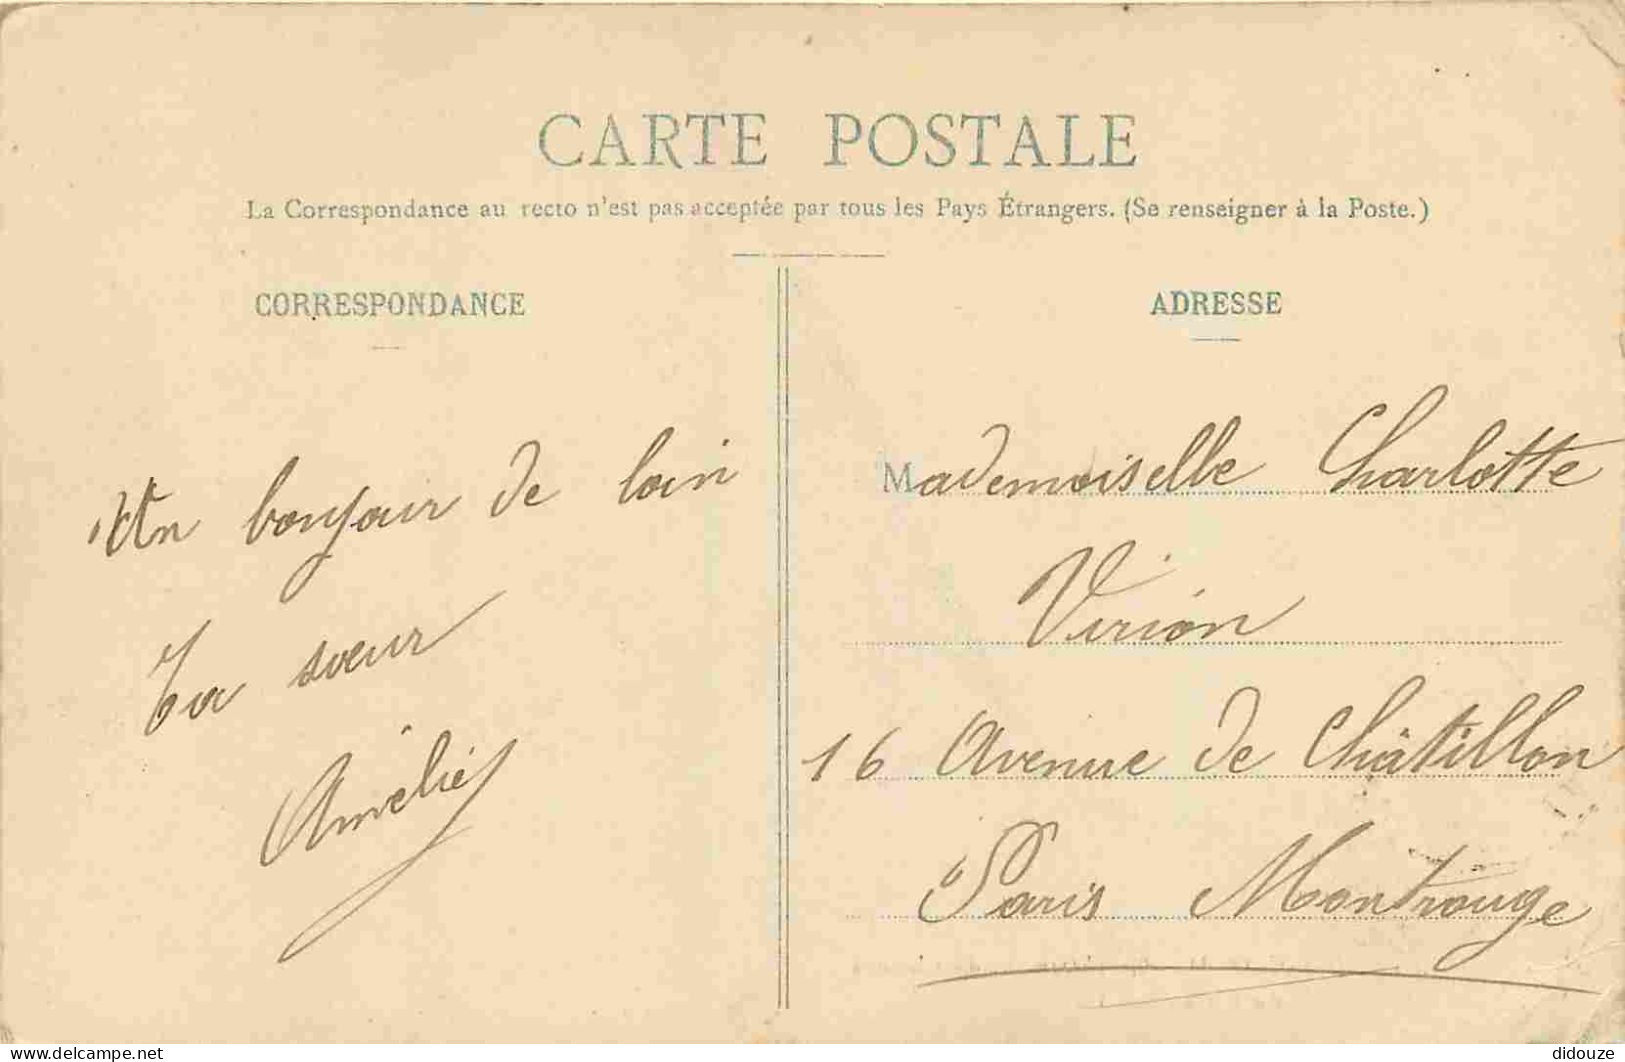 92 - Saint Cloud - Emplacement Du Château - Allée Du Fer à Cheval - Animée - CPA - Oblitération Ronde De 1909 - Etat Pli - Saint Cloud